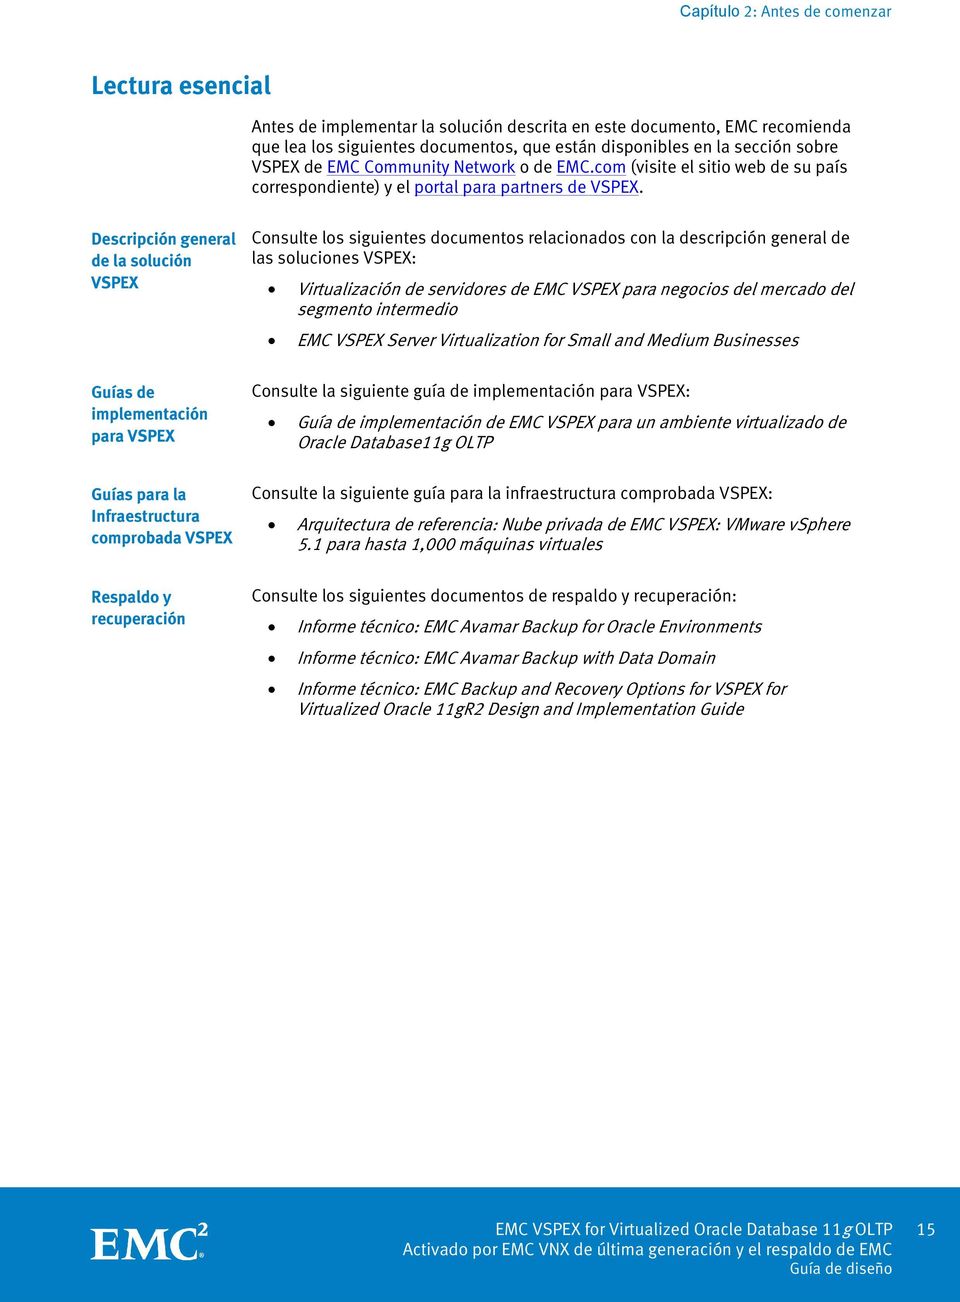 Descripción general de la solución VSPEX Guías de implementación para VSPEX Guías para la Infraestructura comprobada VSPEX Respaldo y recuperación Consulte los siguientes documentos relacionados con